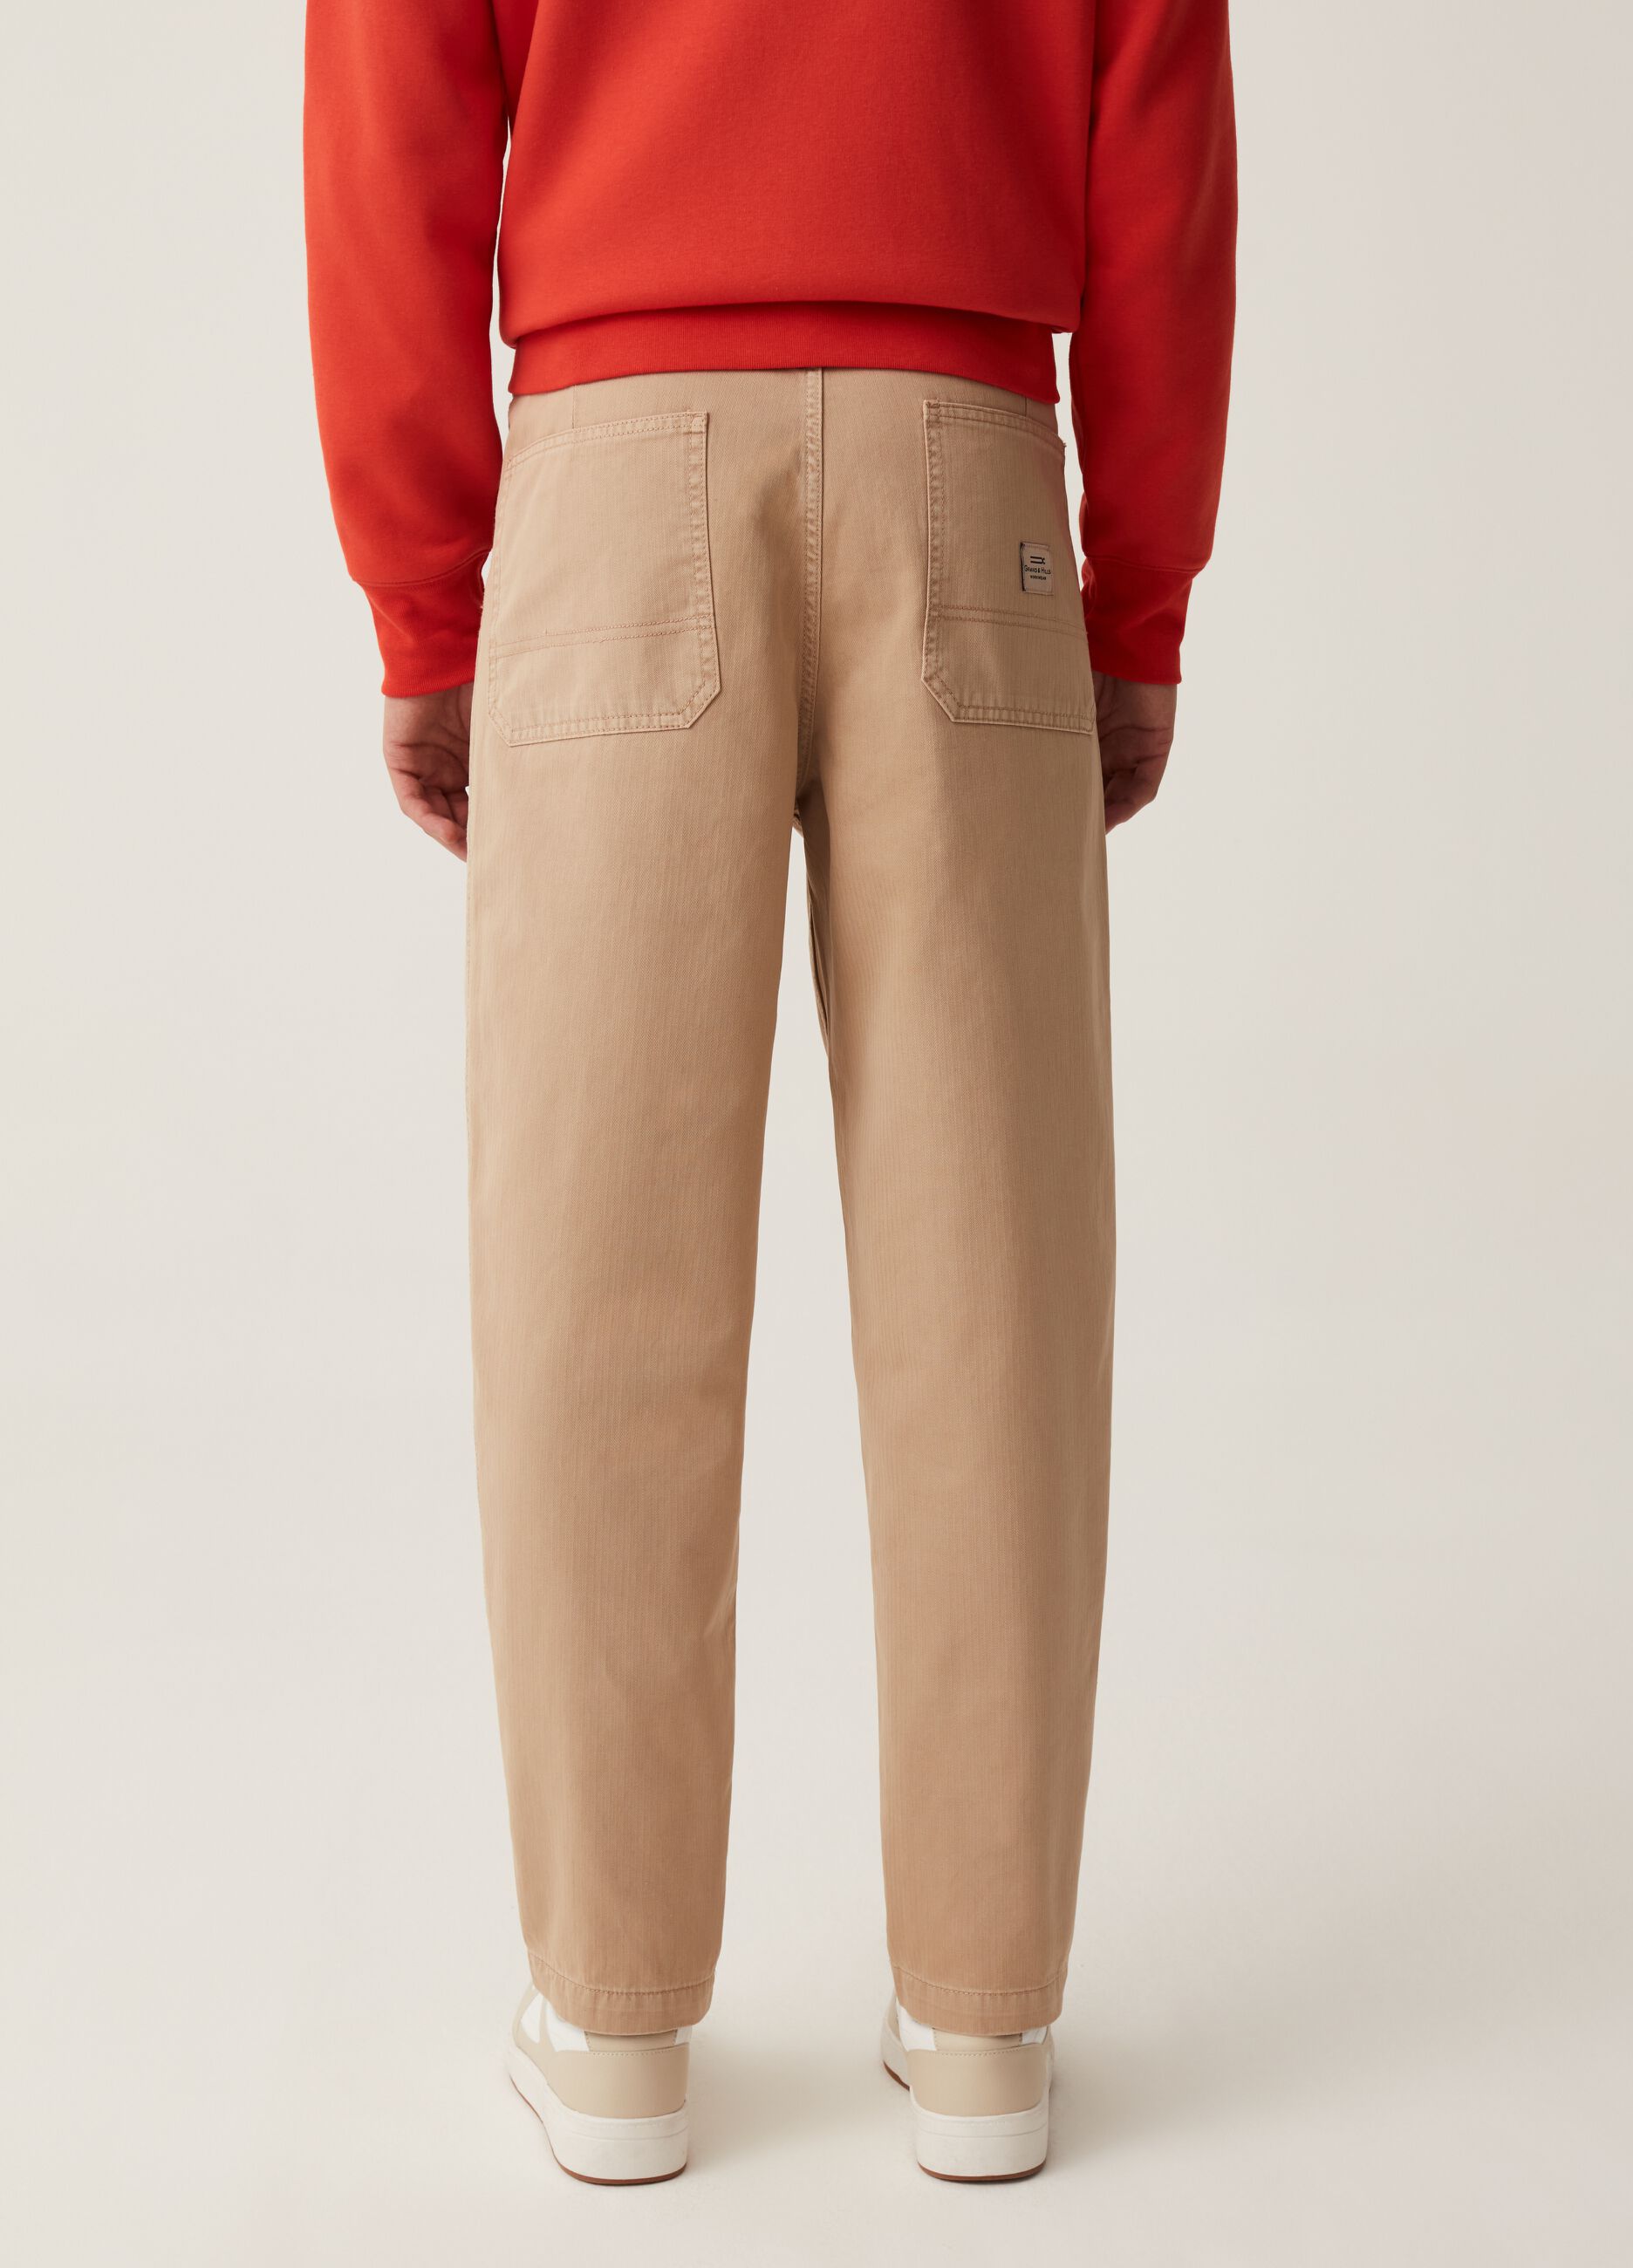 Grand&Hills trousers with herringbone weave